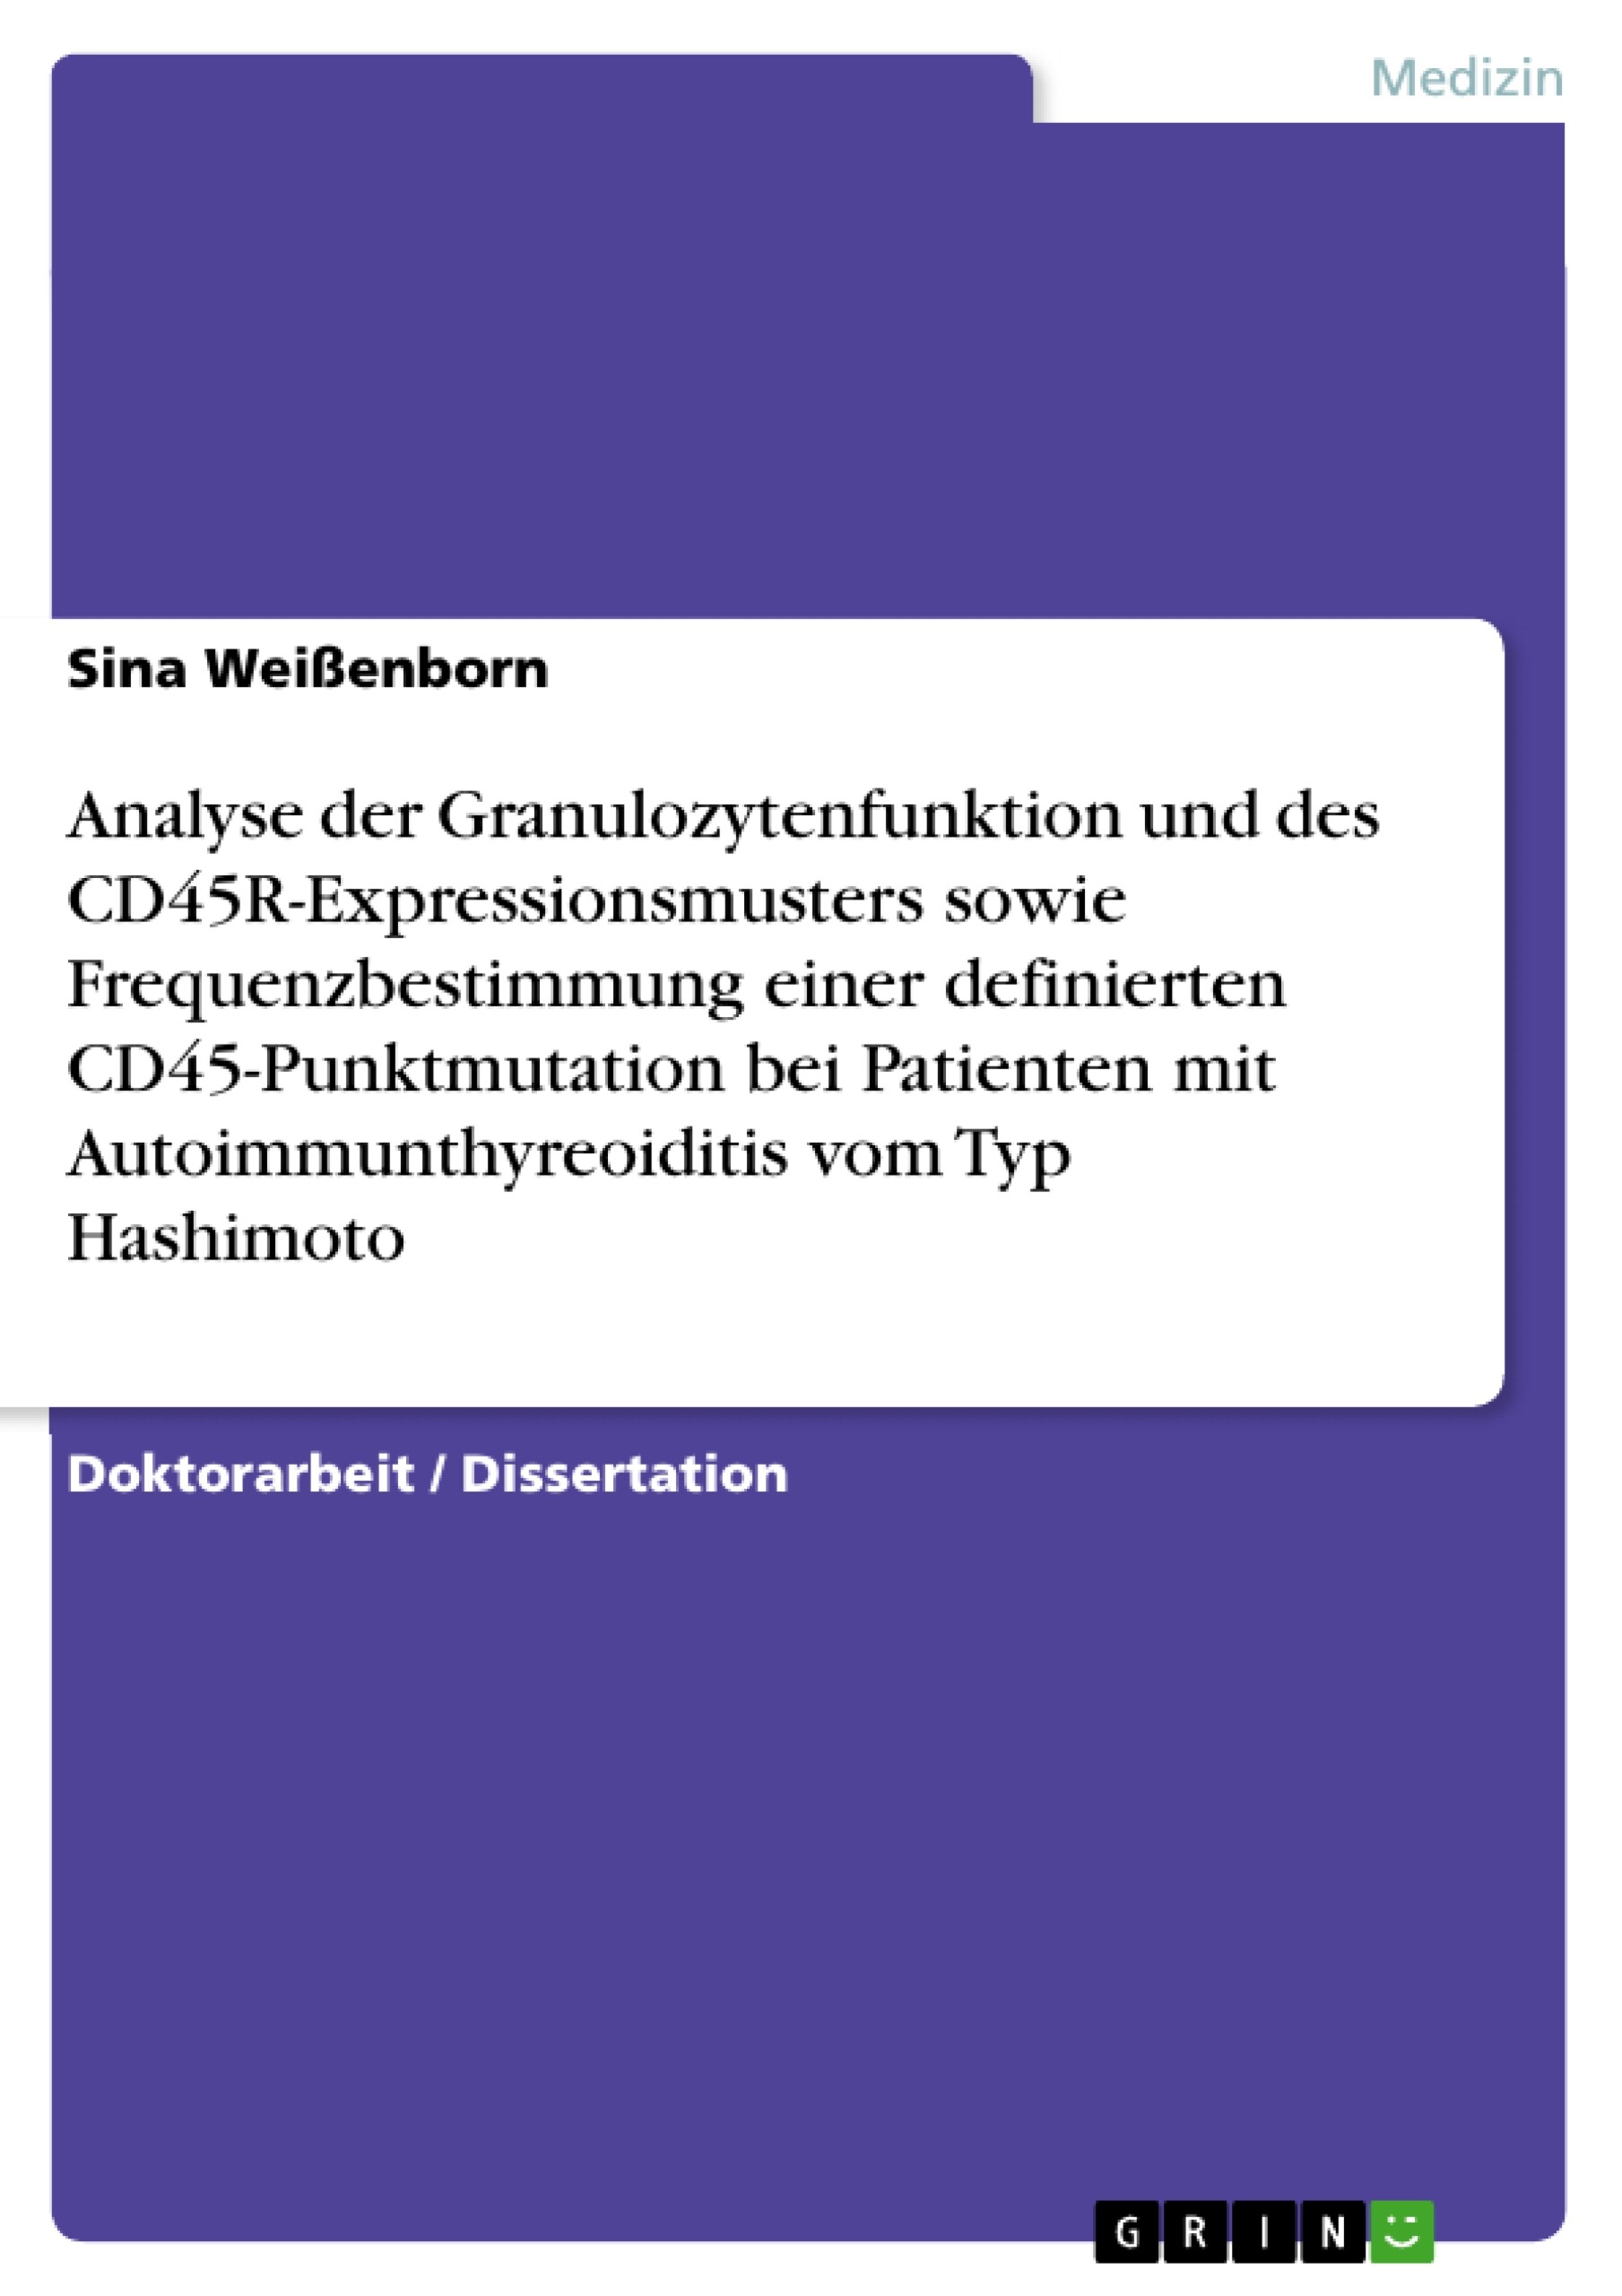 Analyse der Granulozytenfunktion und des CD45R-Expressionsmusters sowie Frequenzbestimmung einer definierten CD45-Punktmutation bei Patienten mit Autoimmunthyreoiditis vom Typ Hashimoto